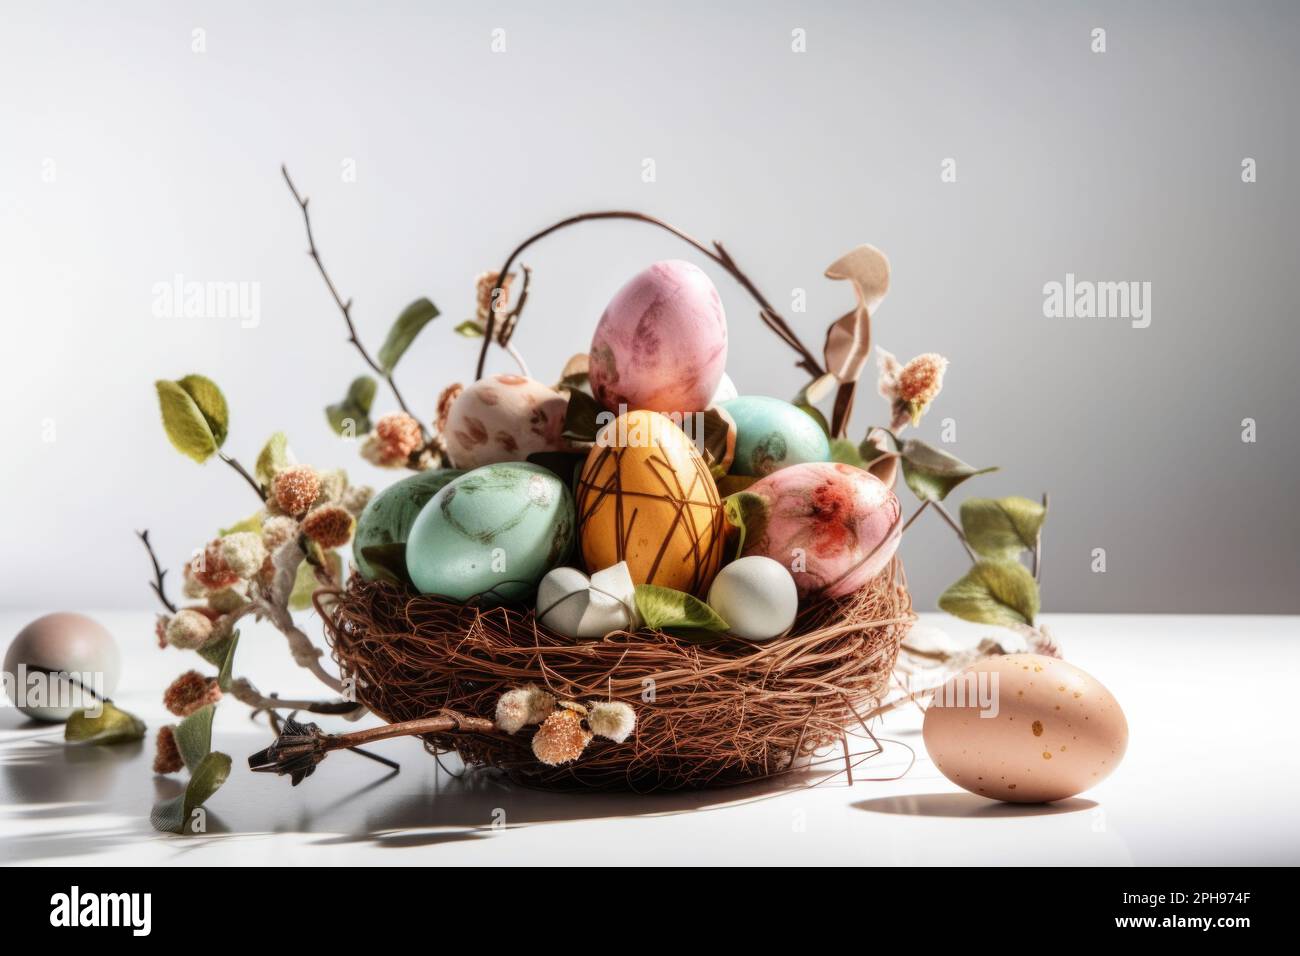 Apportez une touche de couleur et de style à vos décorations de Pâques avec un panier chic rempli d'œufs colorés. Banque D'Images